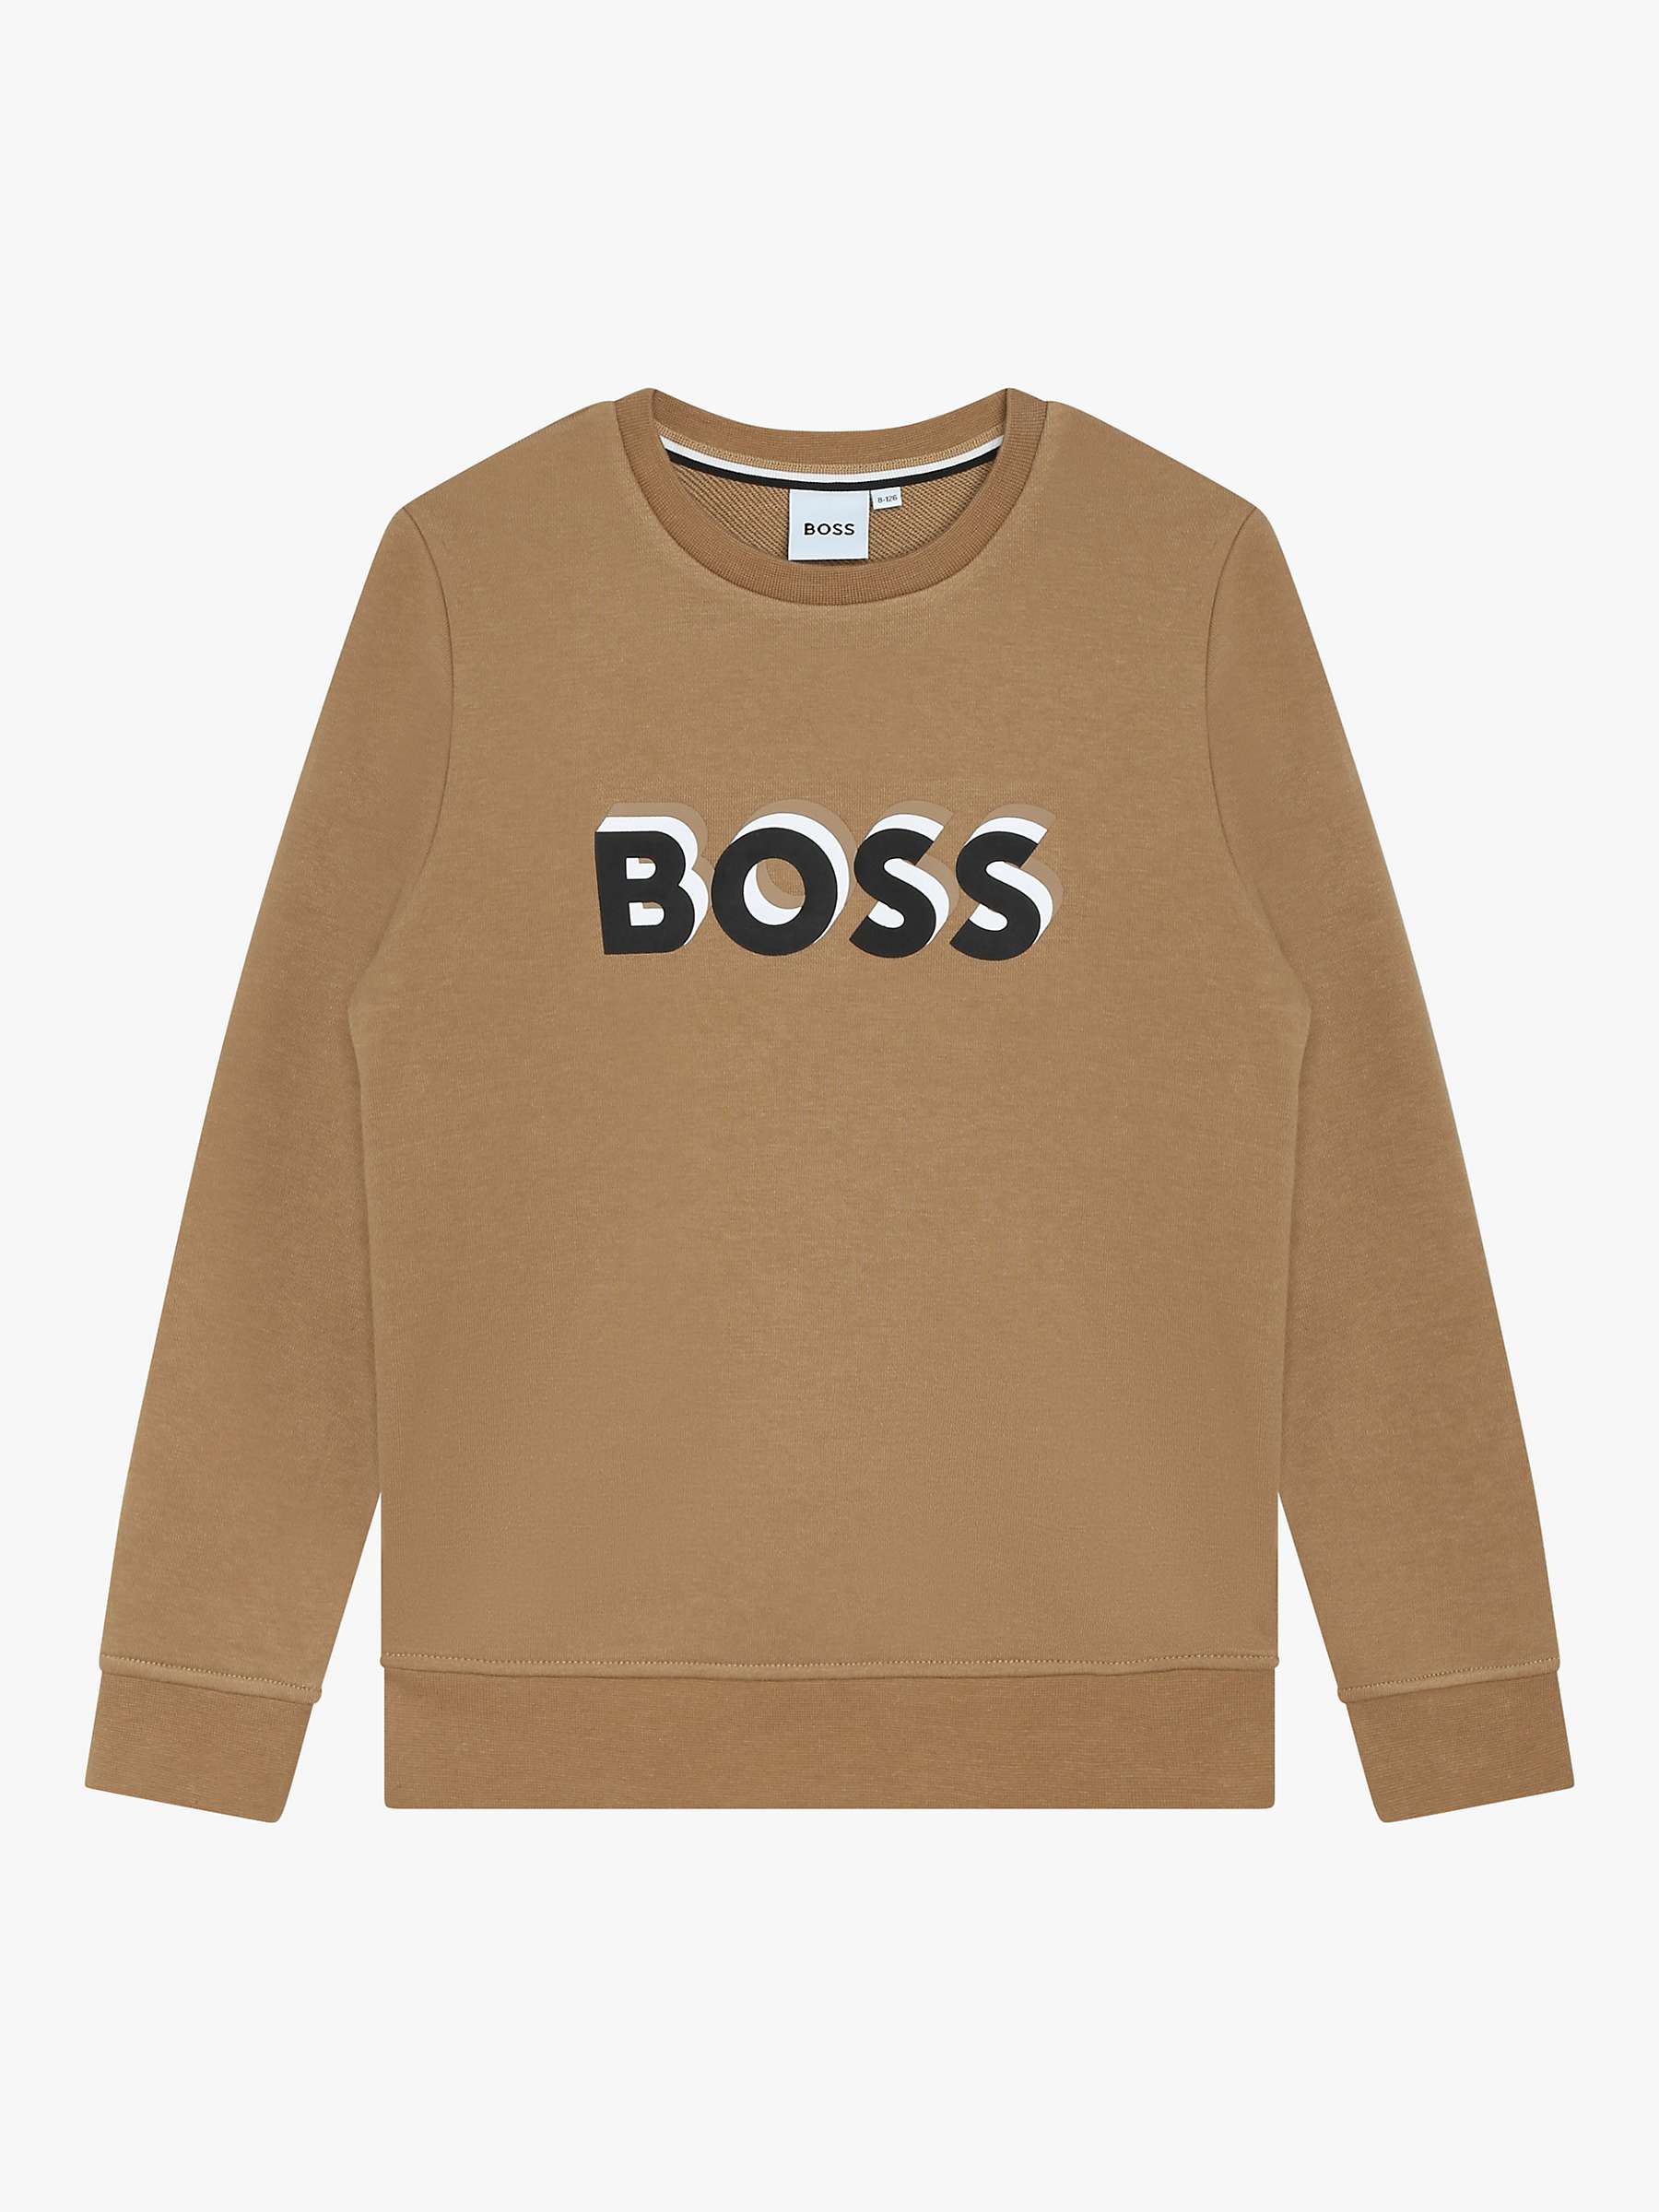 Buy BOSS Kids' Loose Fit Embossed Logo Sweatshirt, Chocolate Online at johnlewis.com